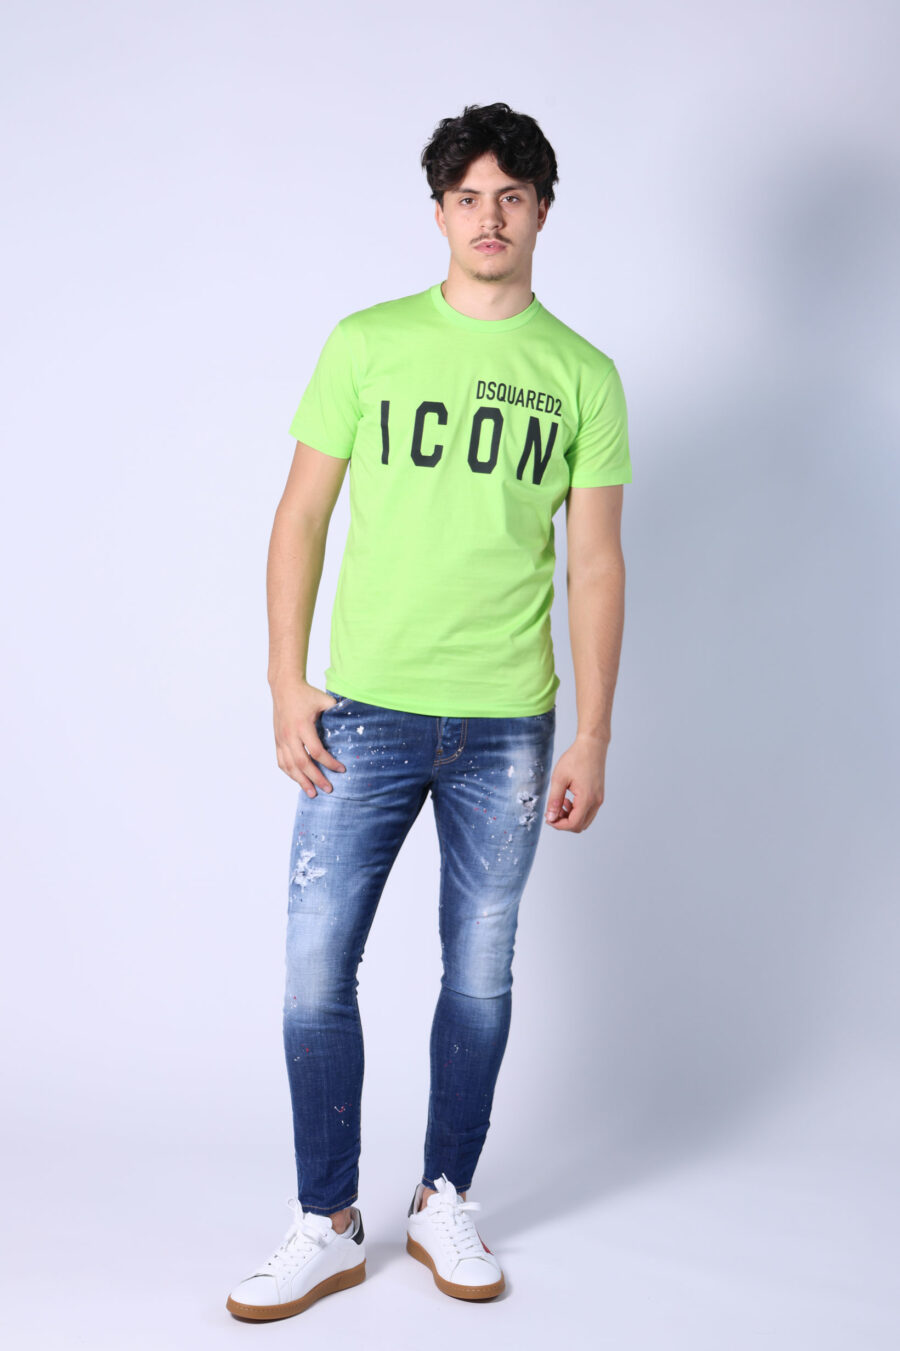 Camiseta verde lima con maxilogo "icon" negro - Untitled Catalog 05394